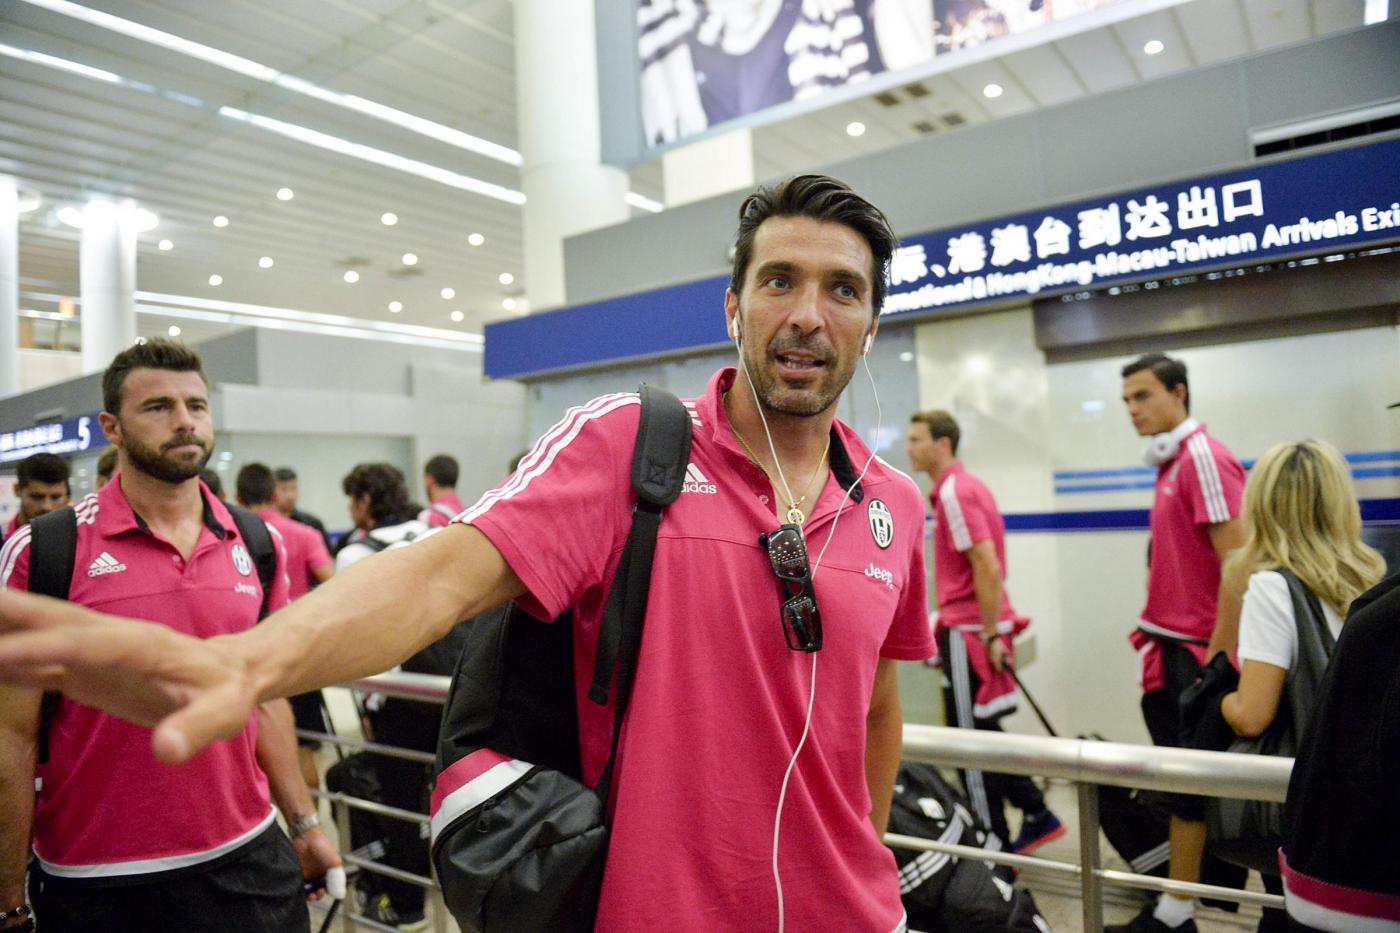 Marchisio, Buffon, Llorente, Pogba a Shanghai: arrivo in aeroporto FOTO 6